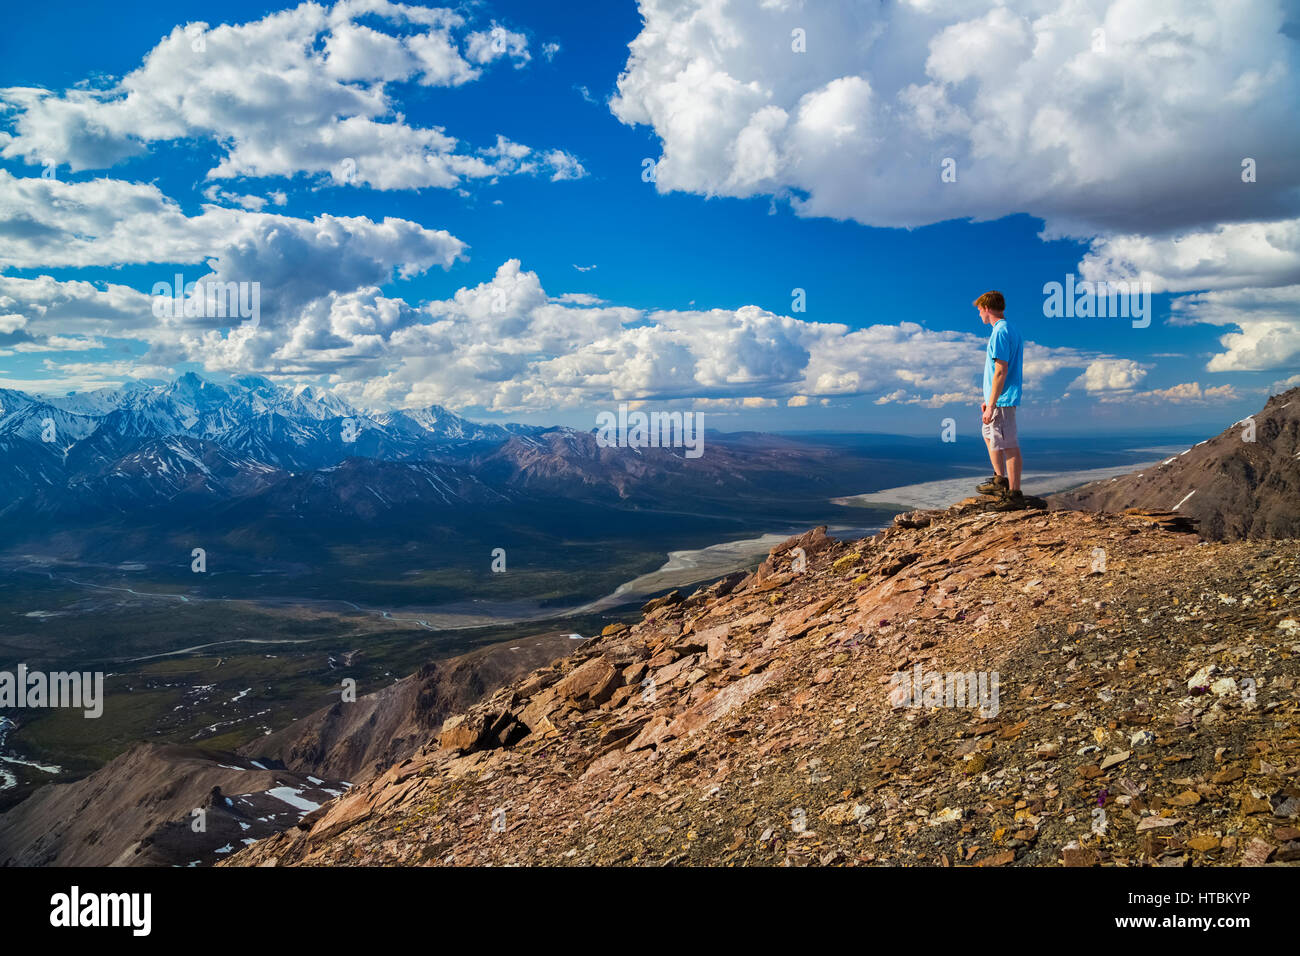 Ein Wanderer steht auf einem Felsvorsprung mit Blick auf das Delta Flusstal in einem Gebiet von der Alaska Range bekannt wie die Delta-Berge Stockfoto